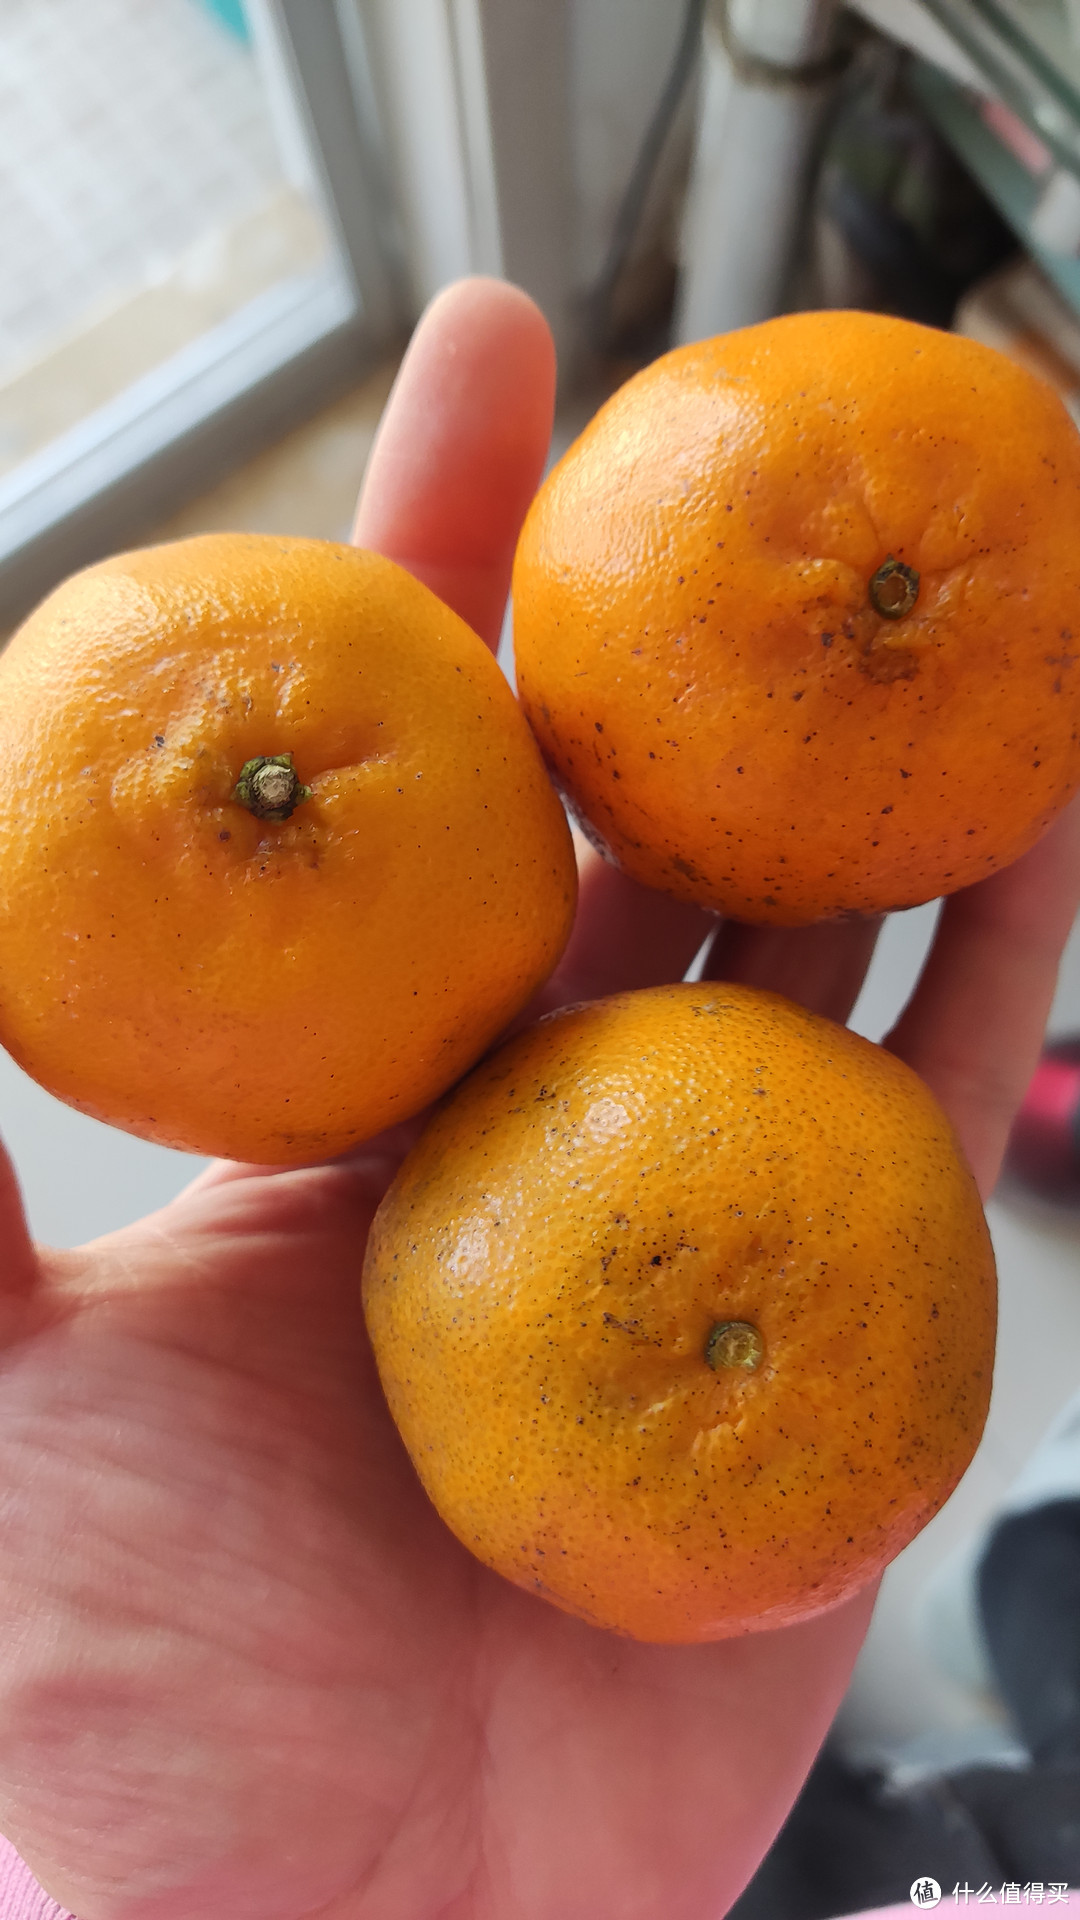 橘子一样大小的耙耙柑叫耙耙柑吗？